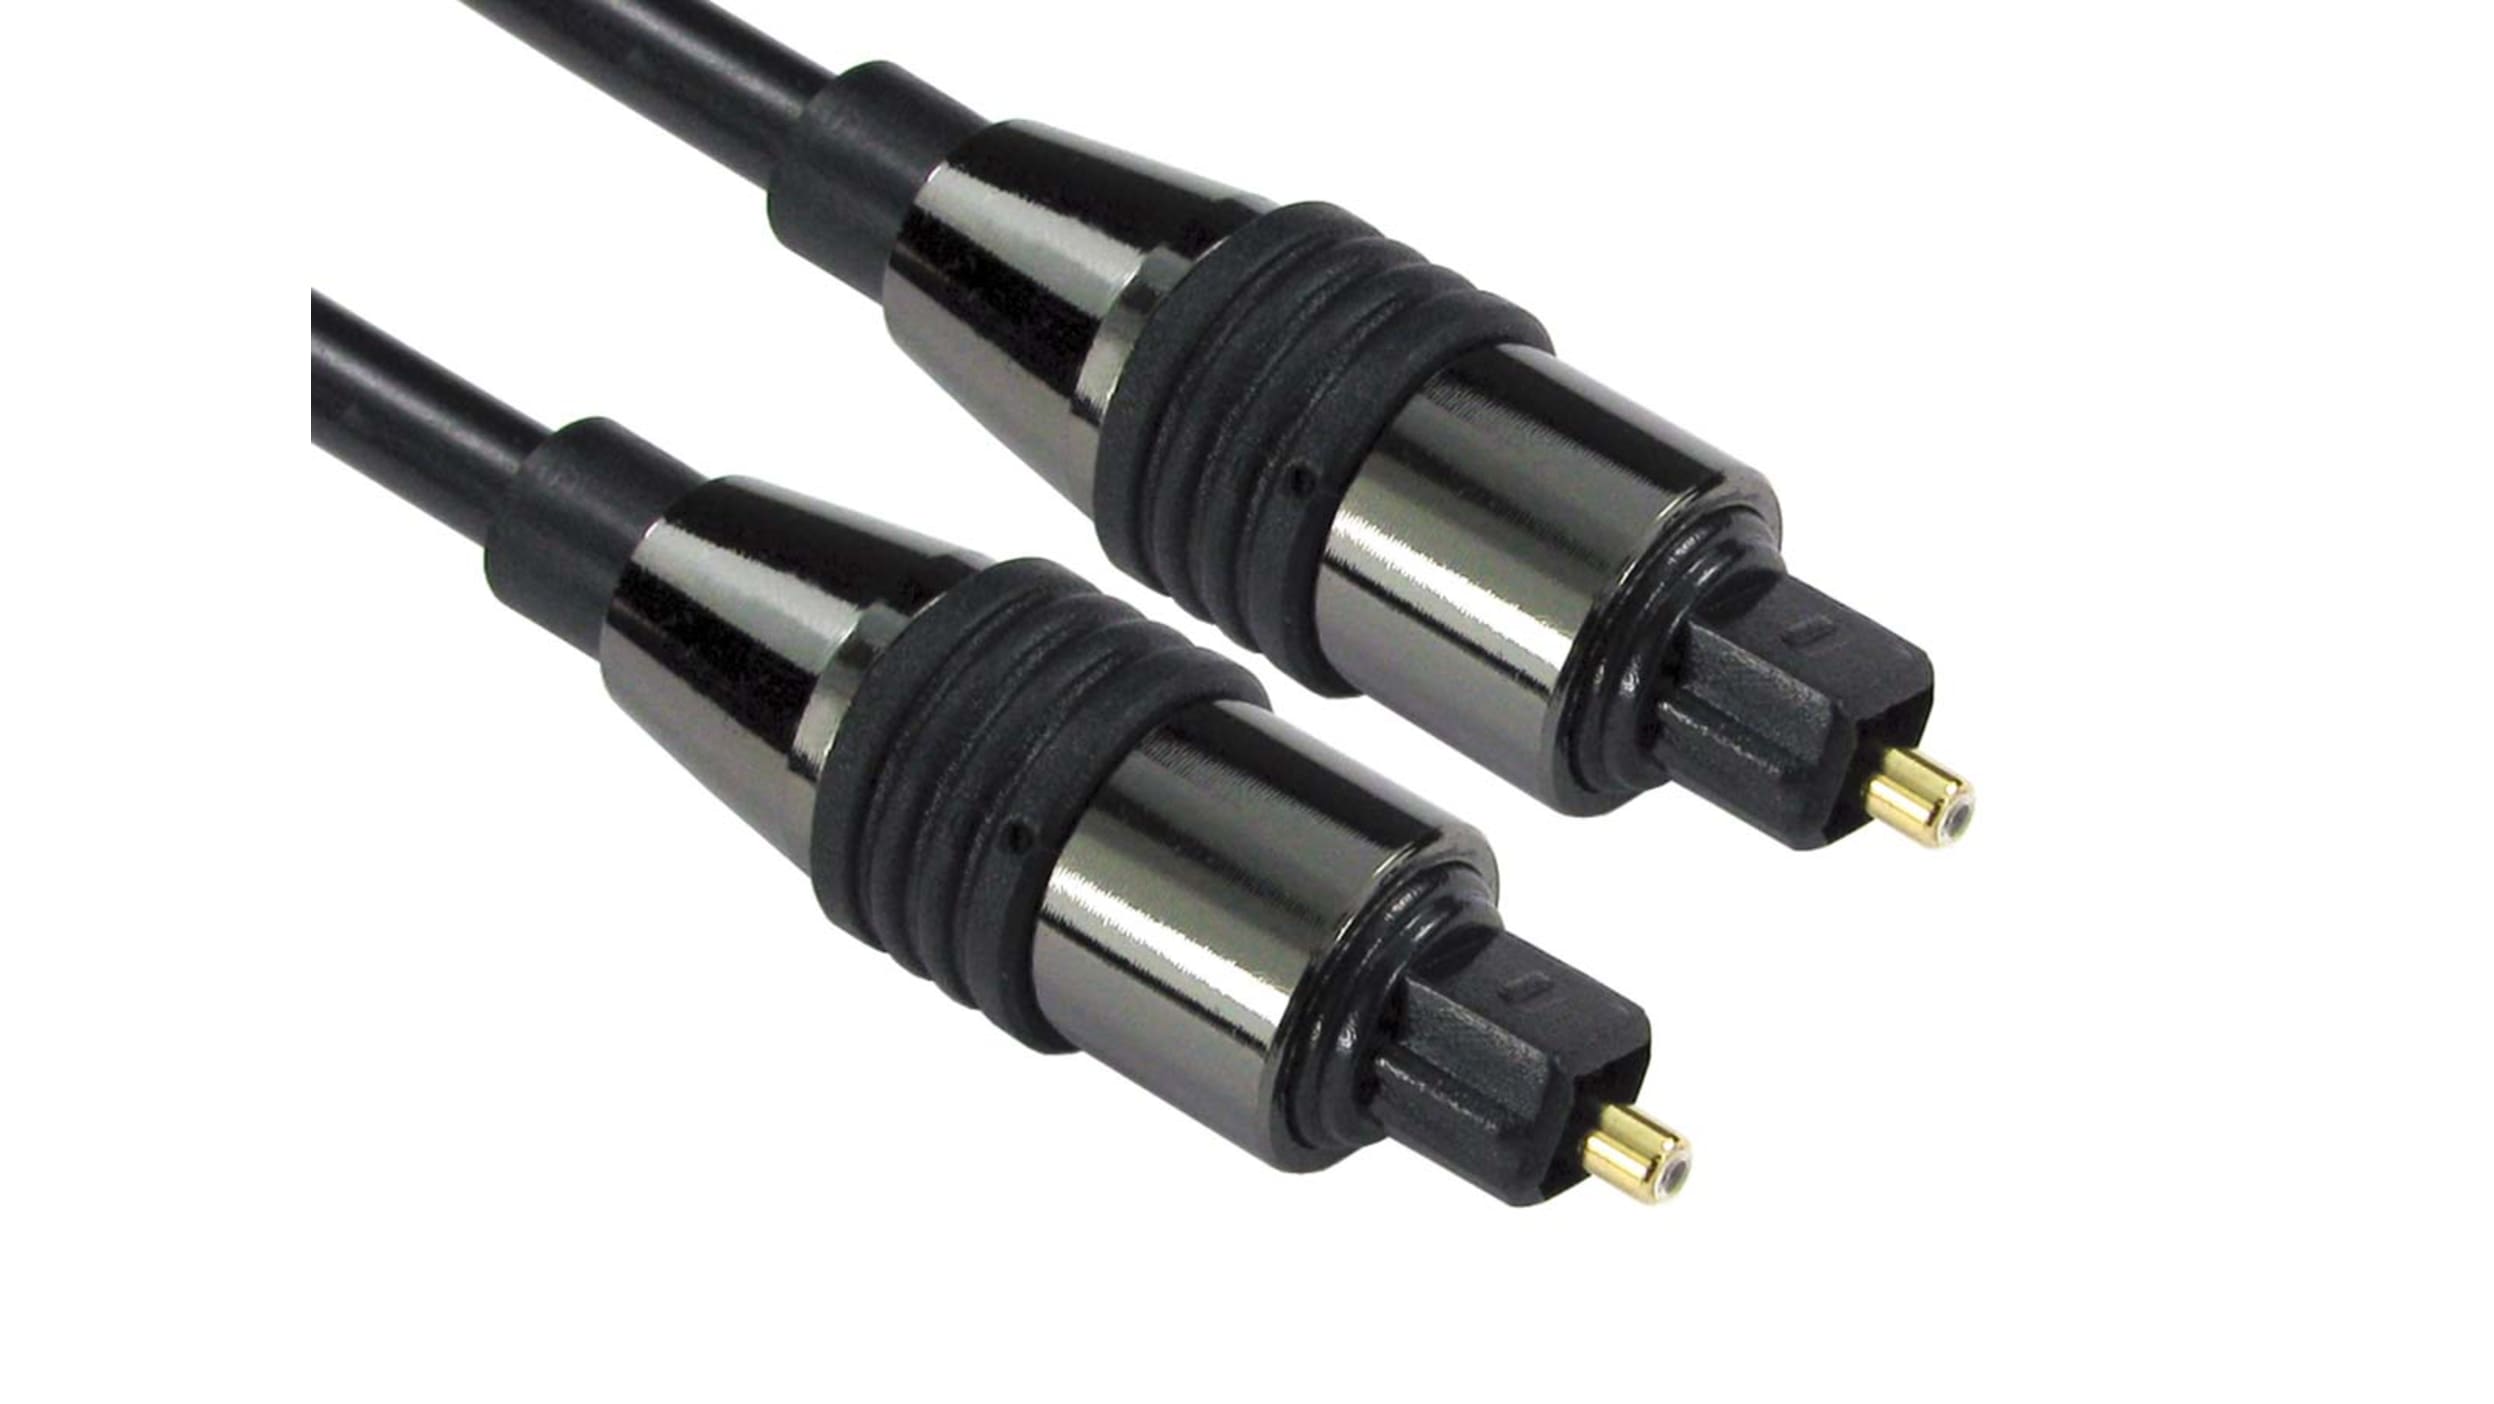 20ft Toslink to Digital Audio Cable - Câbles audio numériques